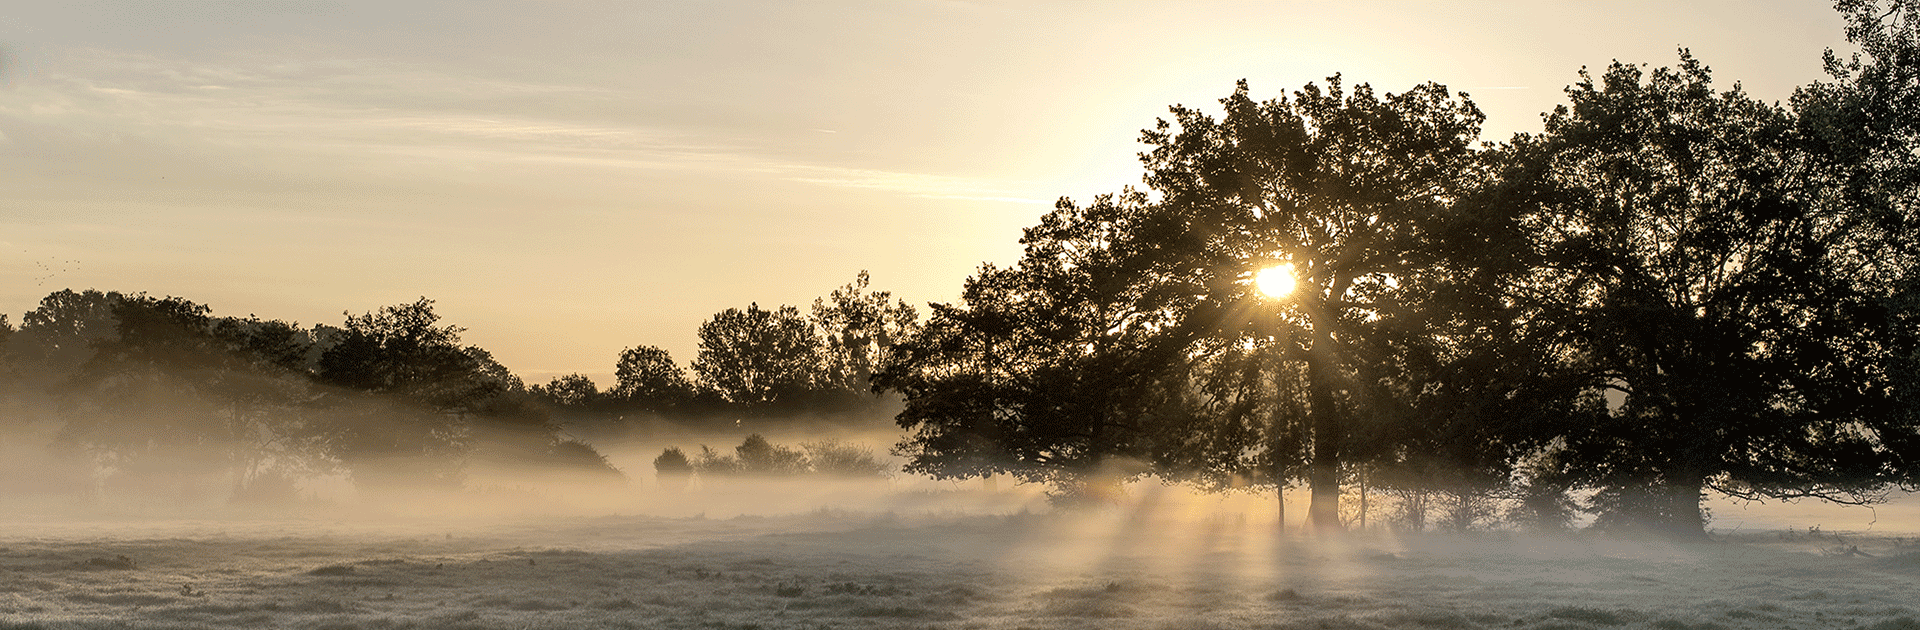 Lever de soleil brumeux entre Fontaine-simon et La Loupe (Paysages du Perche) © 2015 Didier Leplat